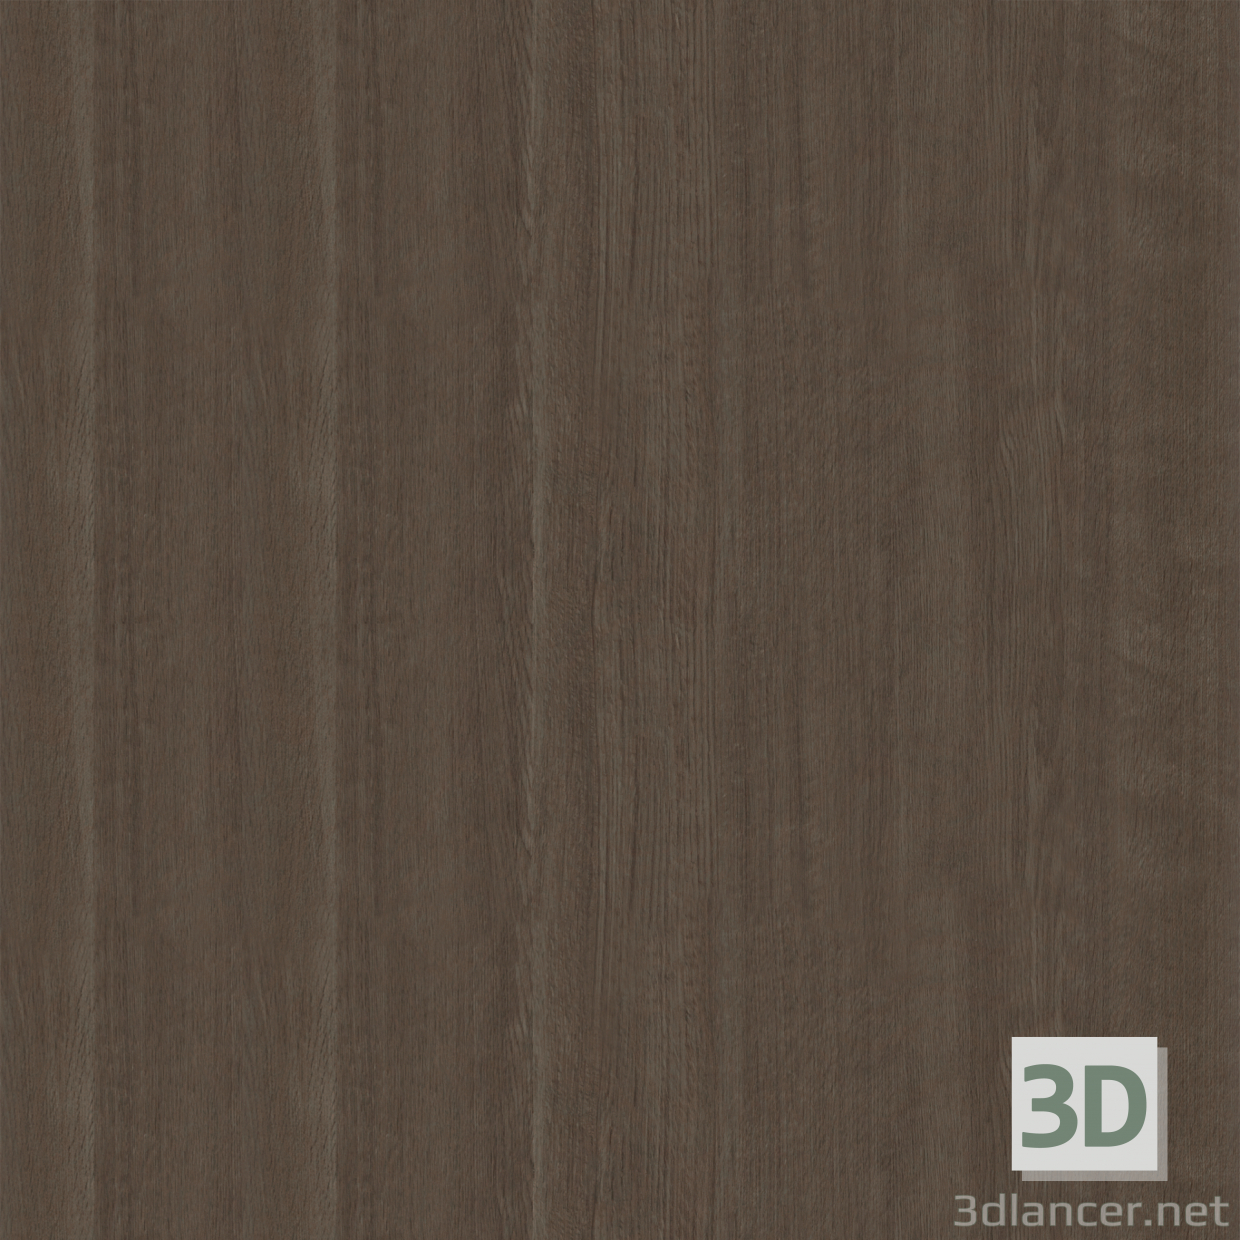 Texture Door textures (part 2) free download - image